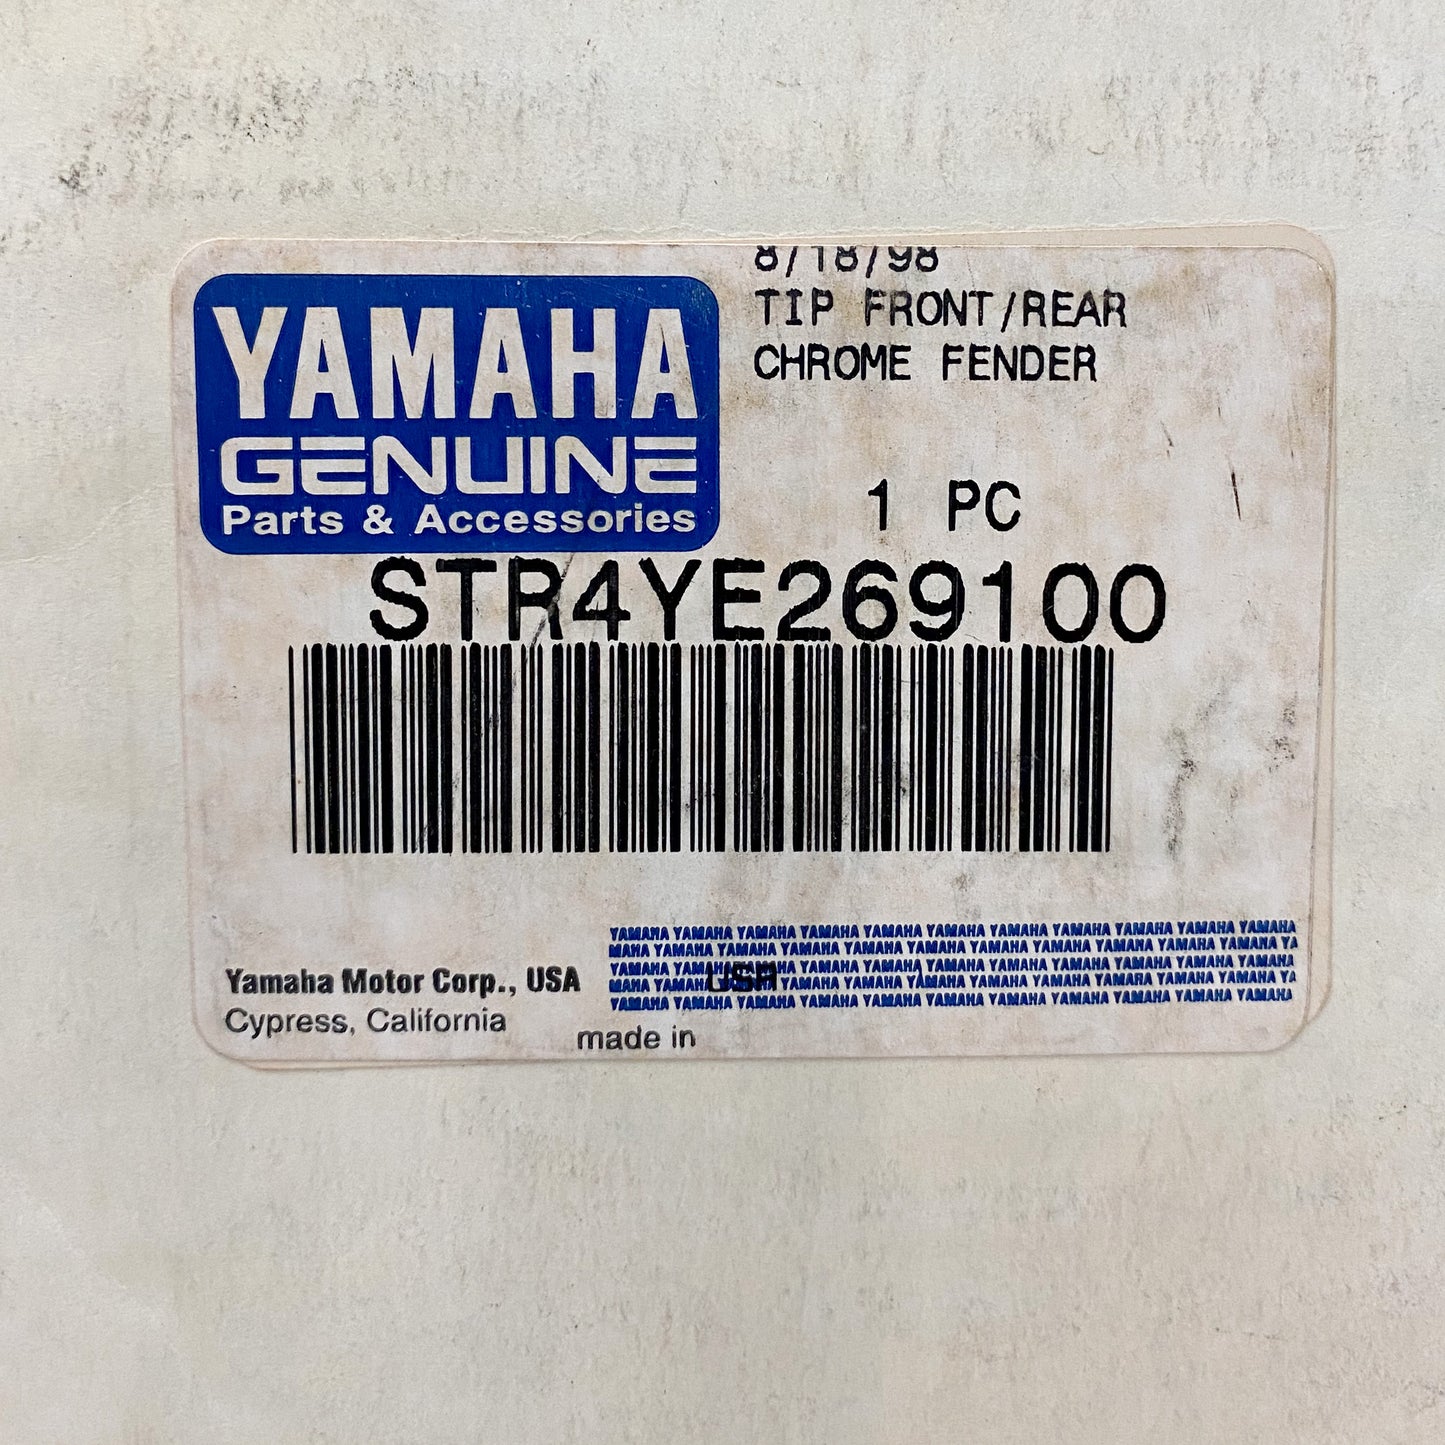 Yamaha Chrome Fender Tip Front/Rear STR-4YE26-91-00